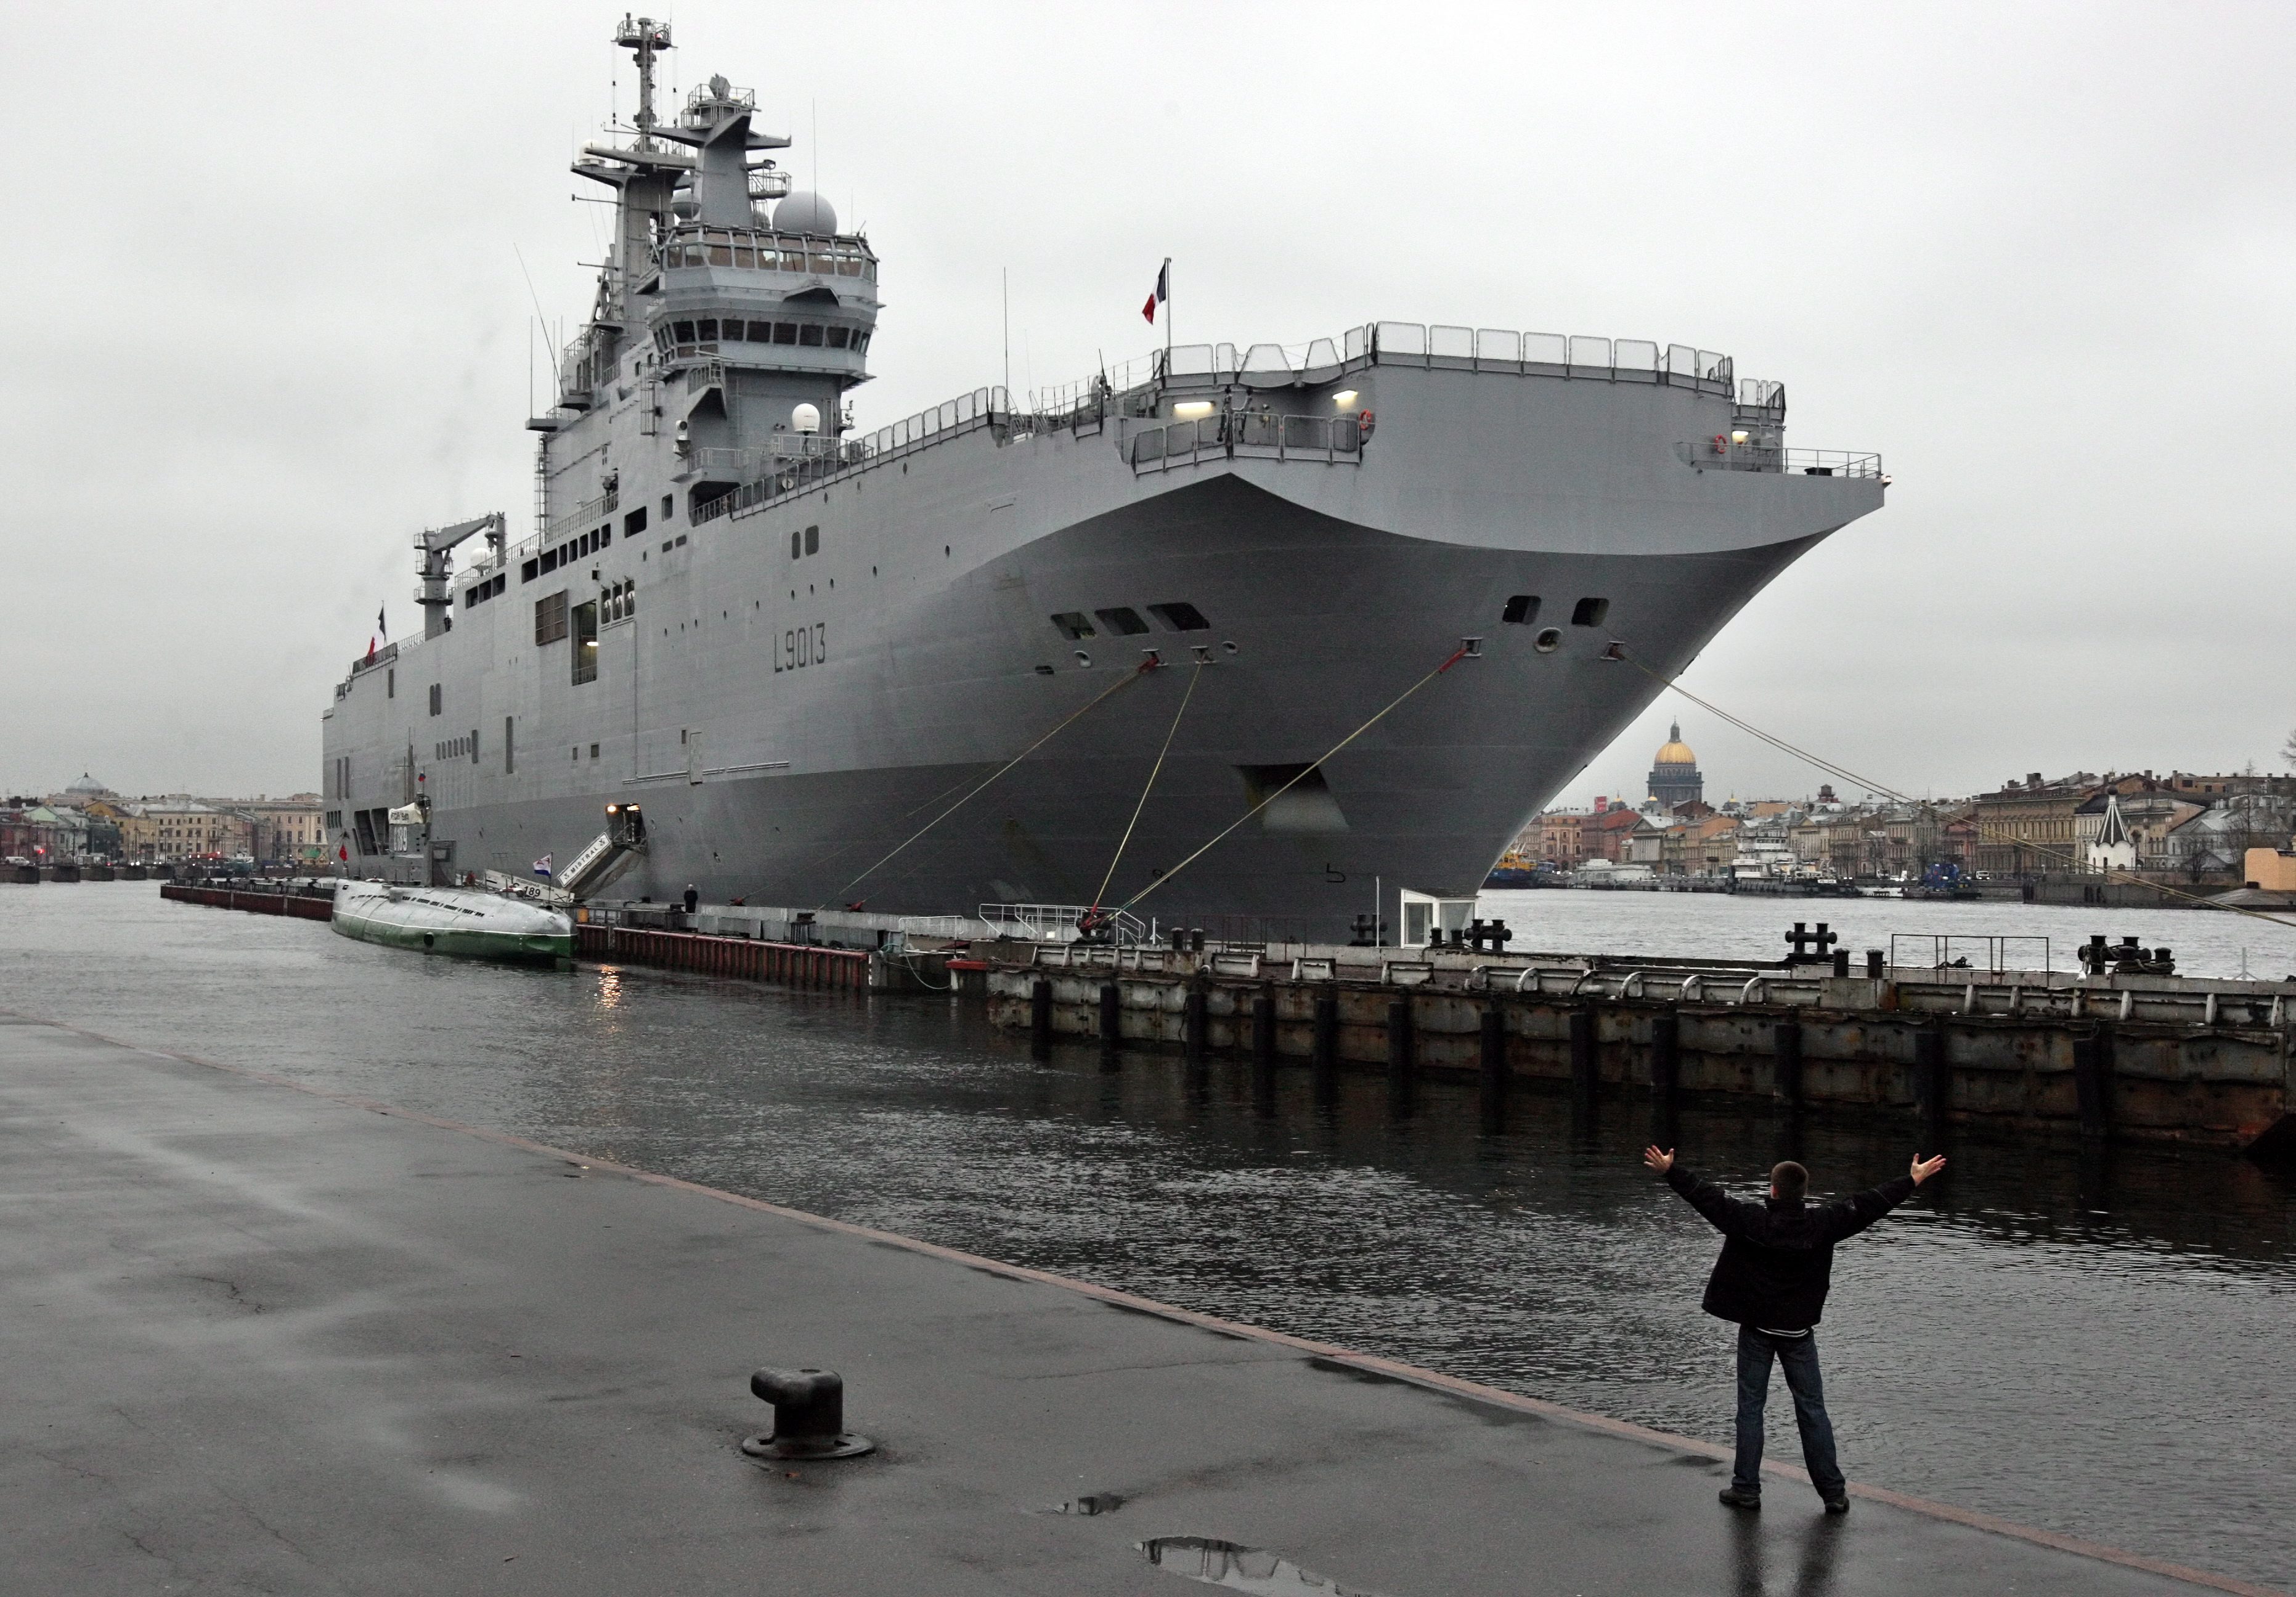 Francie dodá Rusům slíbené válečné lodě. Vydělávat se prostě musí